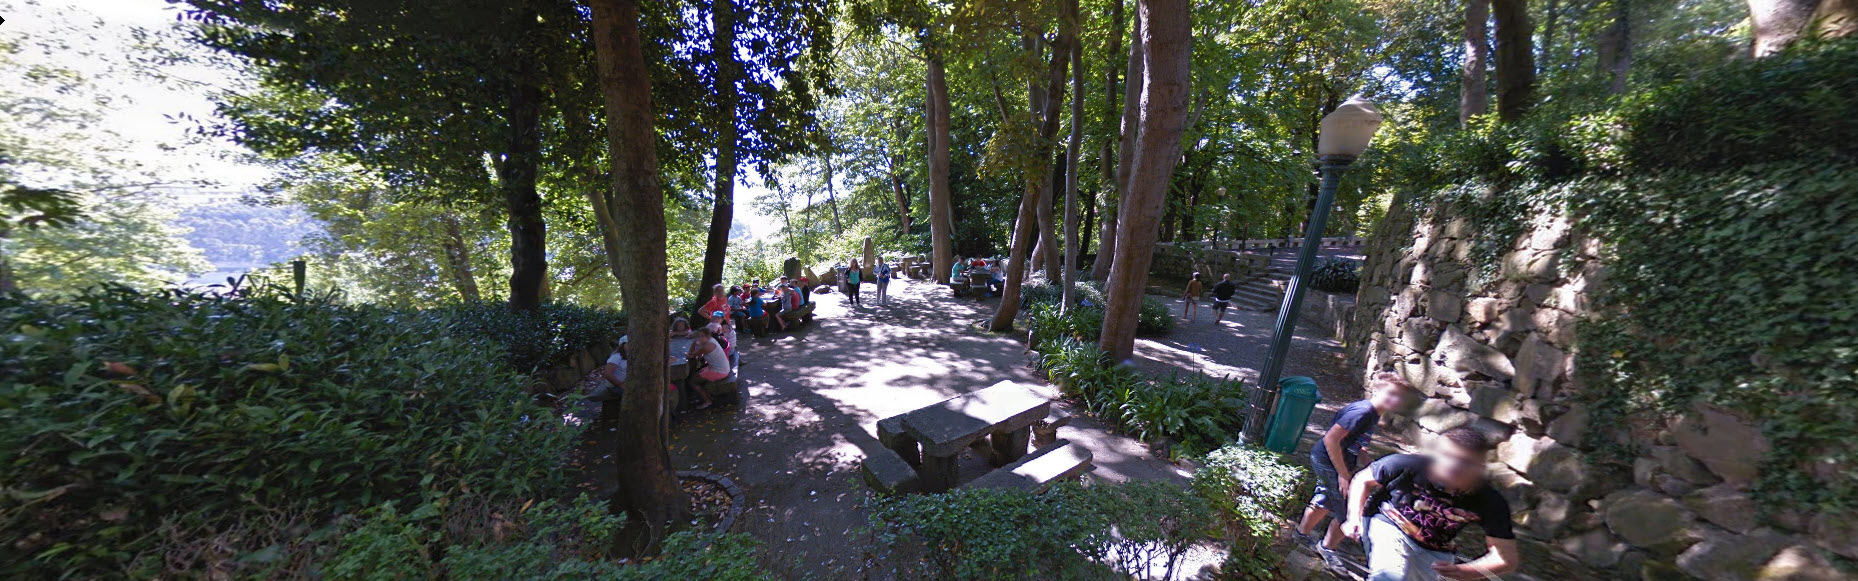 Jardins de Palacio Porto, from google streetview